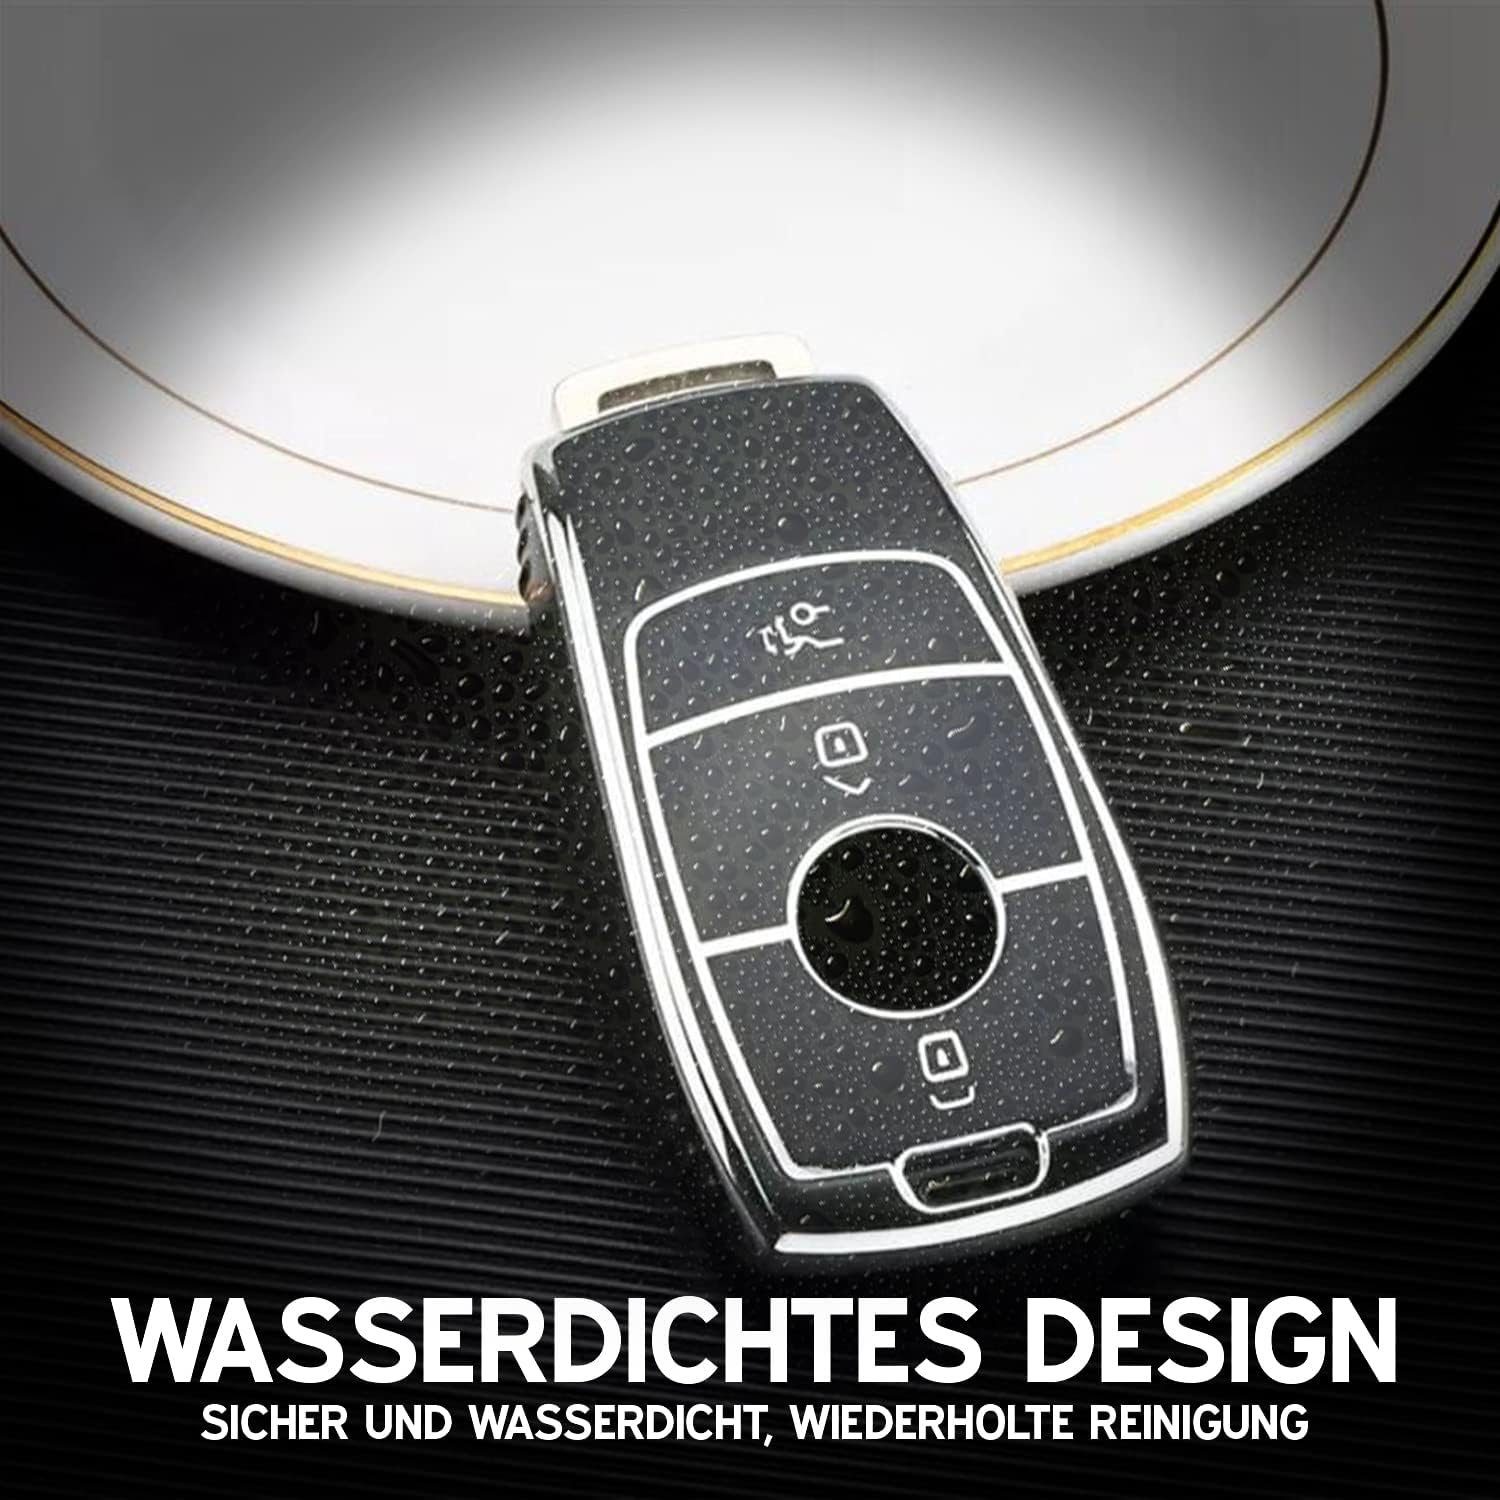 Keyscover Schlüsseltasche Cover Schlüsselhülle für Benz, Mercedes Autoschlüssel Hülle Tasche Schwarz/Chrom